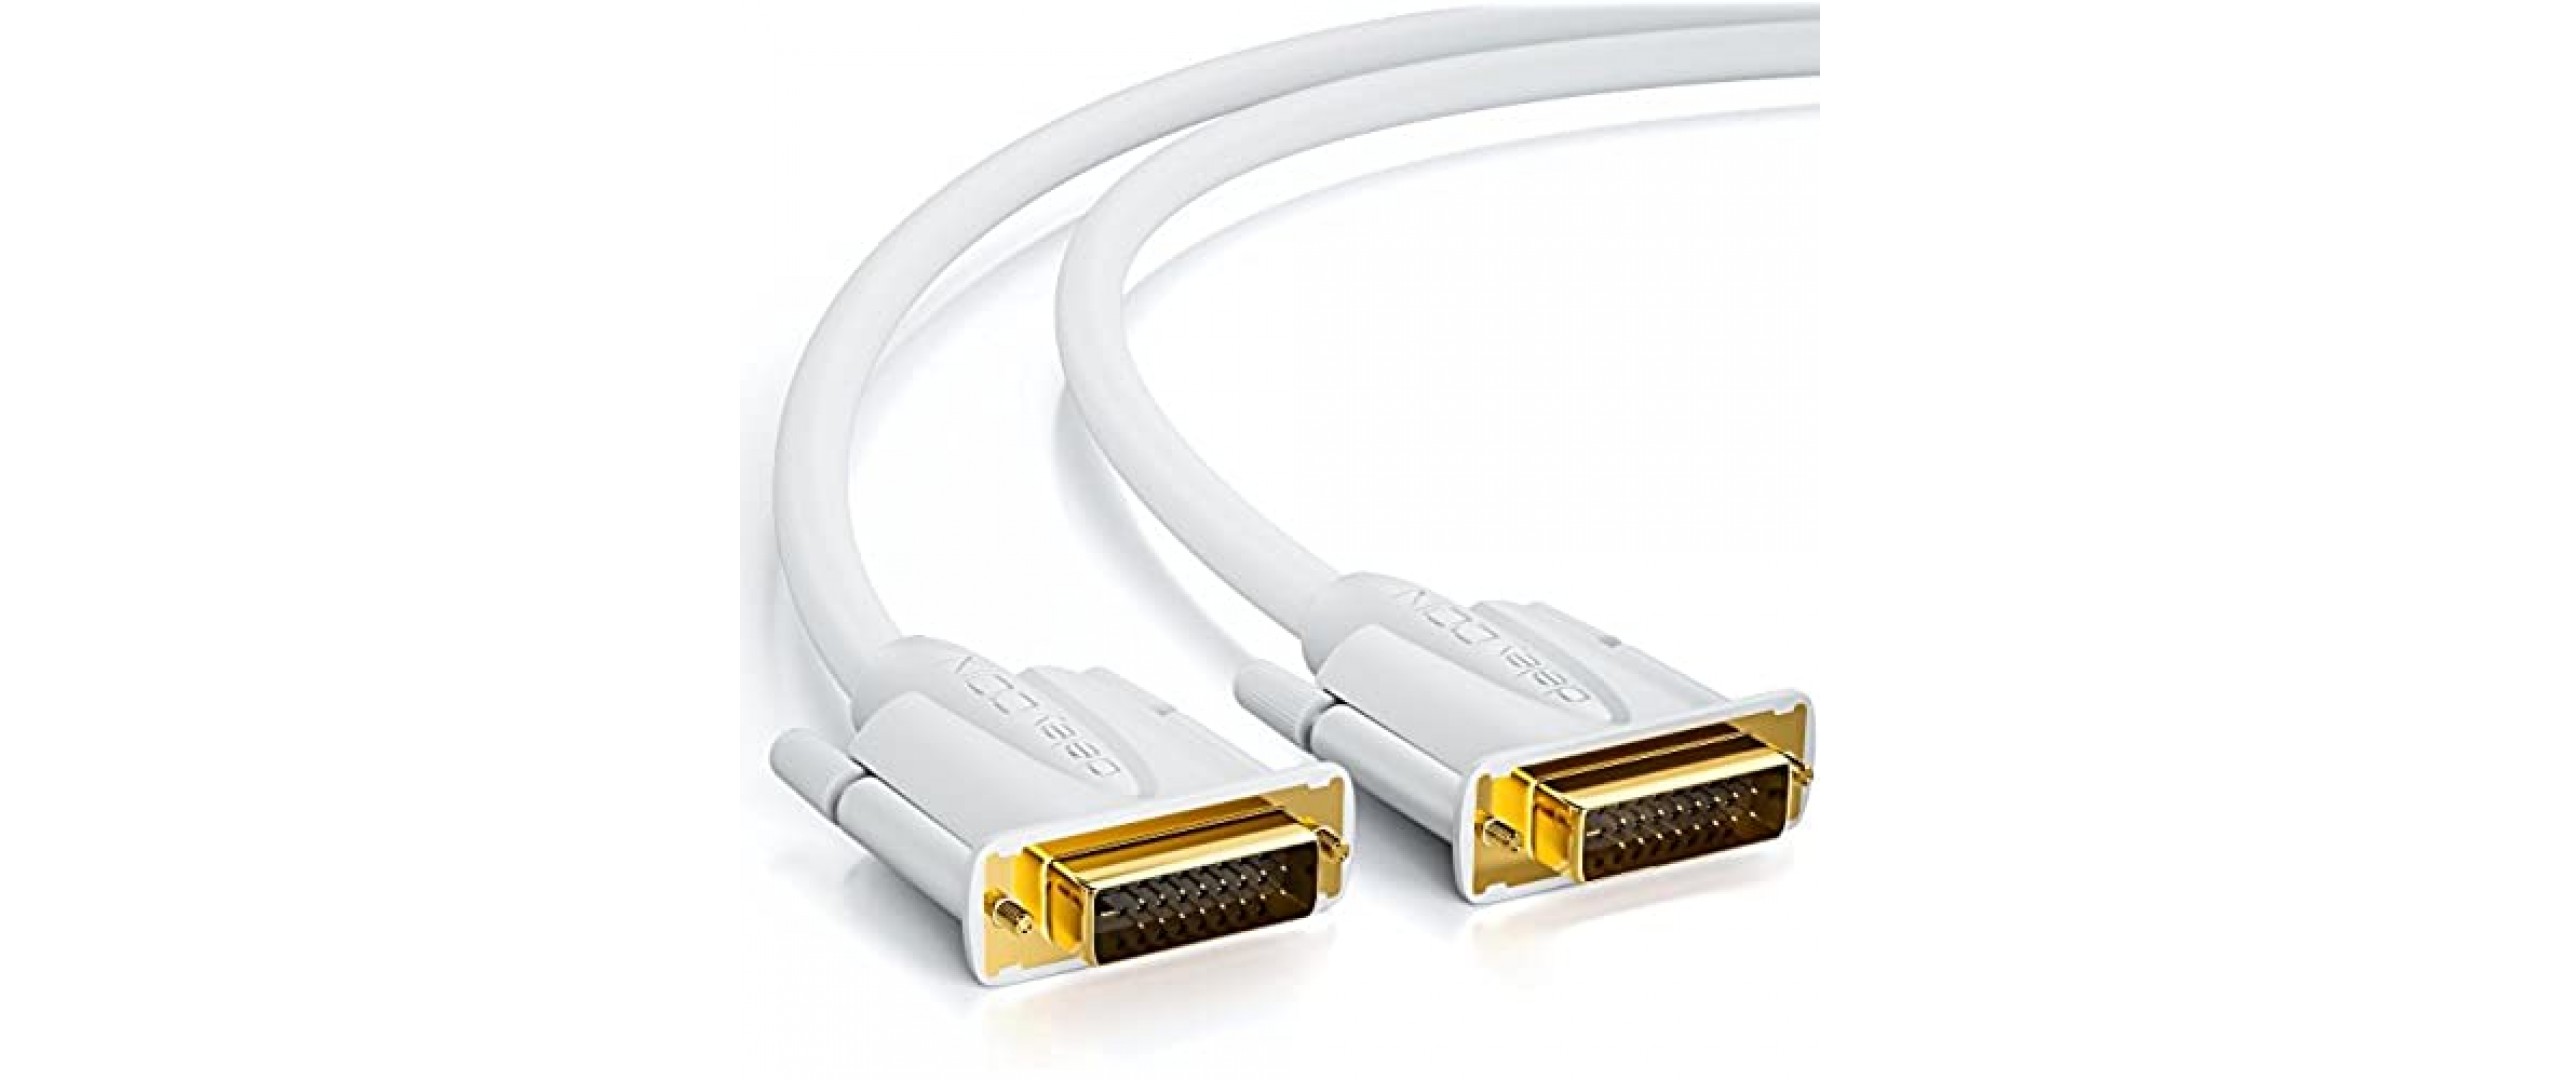 deleyCON 1m DVI Kabel Dual Link 24+1 HDTV Auflösungen bis 2560x1080 Full HD 1080p 3D Ready DVI-D Dual Link vergoldete Kontakte - Weiß